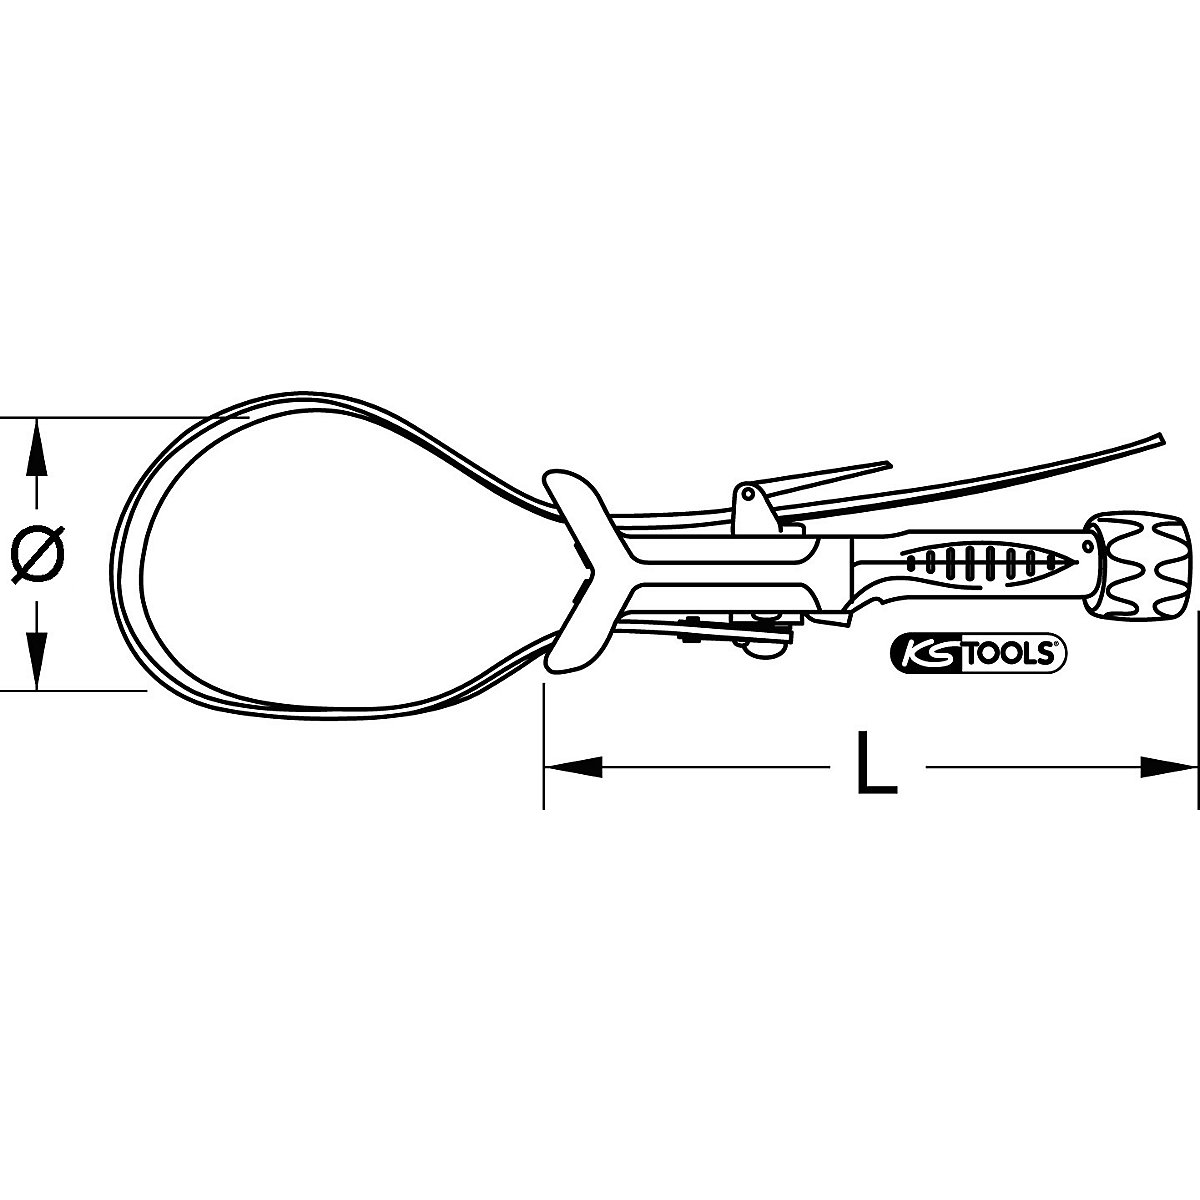 Clește cu bandă pentru țevi – KS Tools (Imagine produs 3)-2